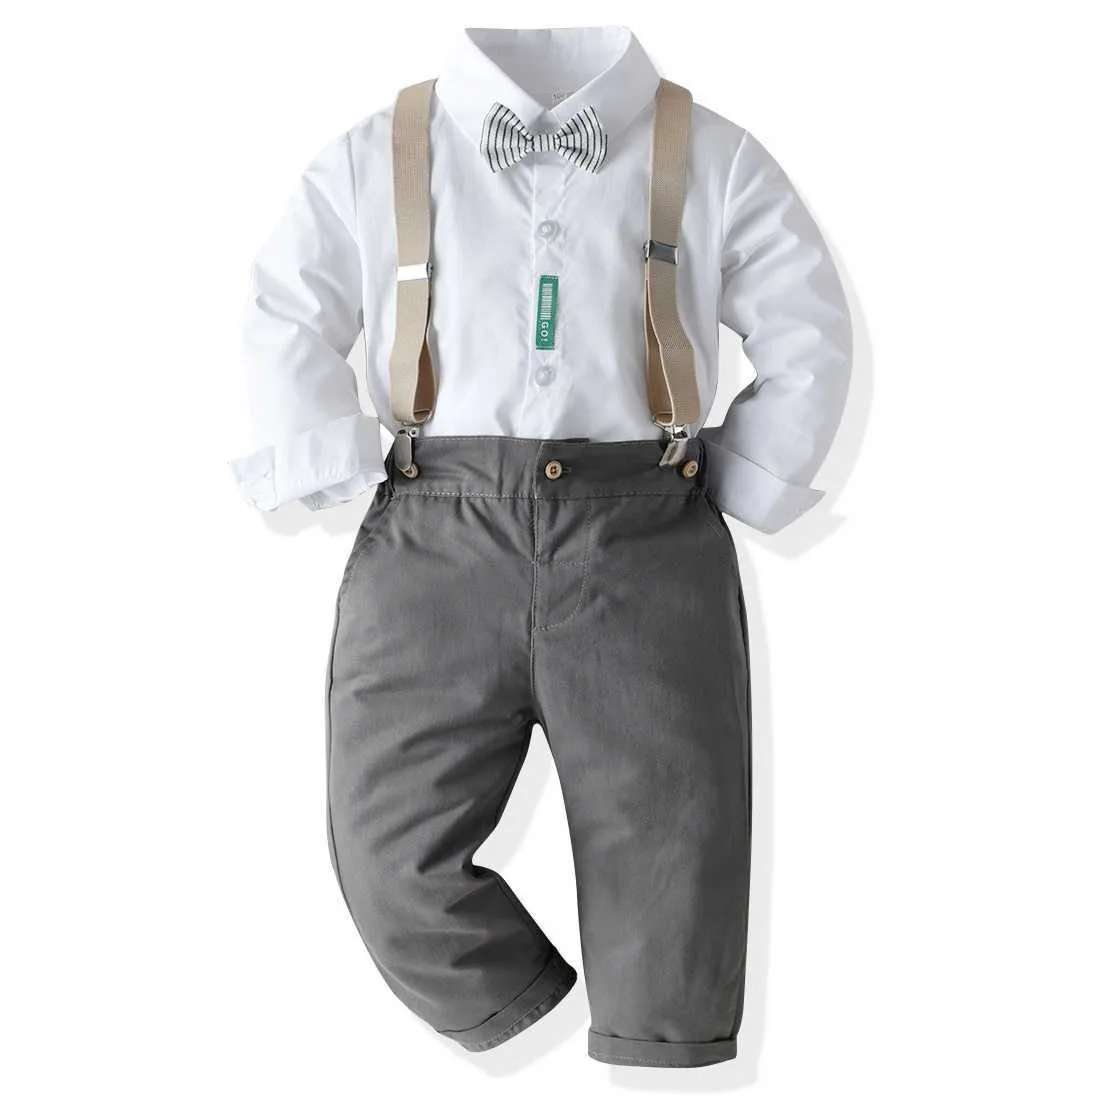 2021 유행 어린이 의류 세트 흰 셔츠 공식 옷을 입고 정식 의류 부츠 키즈 의류 신사 정장 소년 복장 Ropa de Bebe H1023